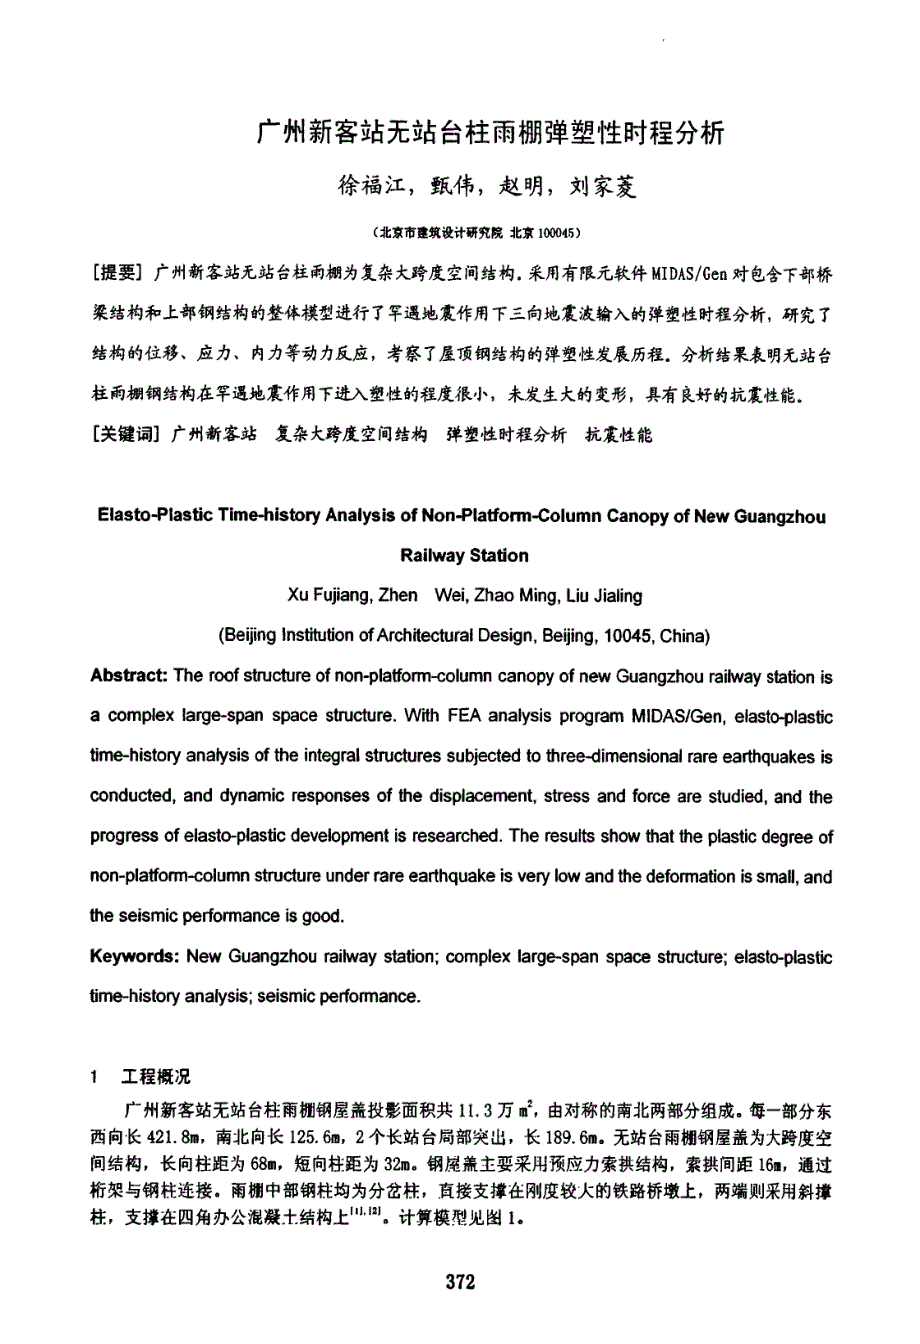 广州新客站无站台柱雨棚弹塑性时程分析_第1页